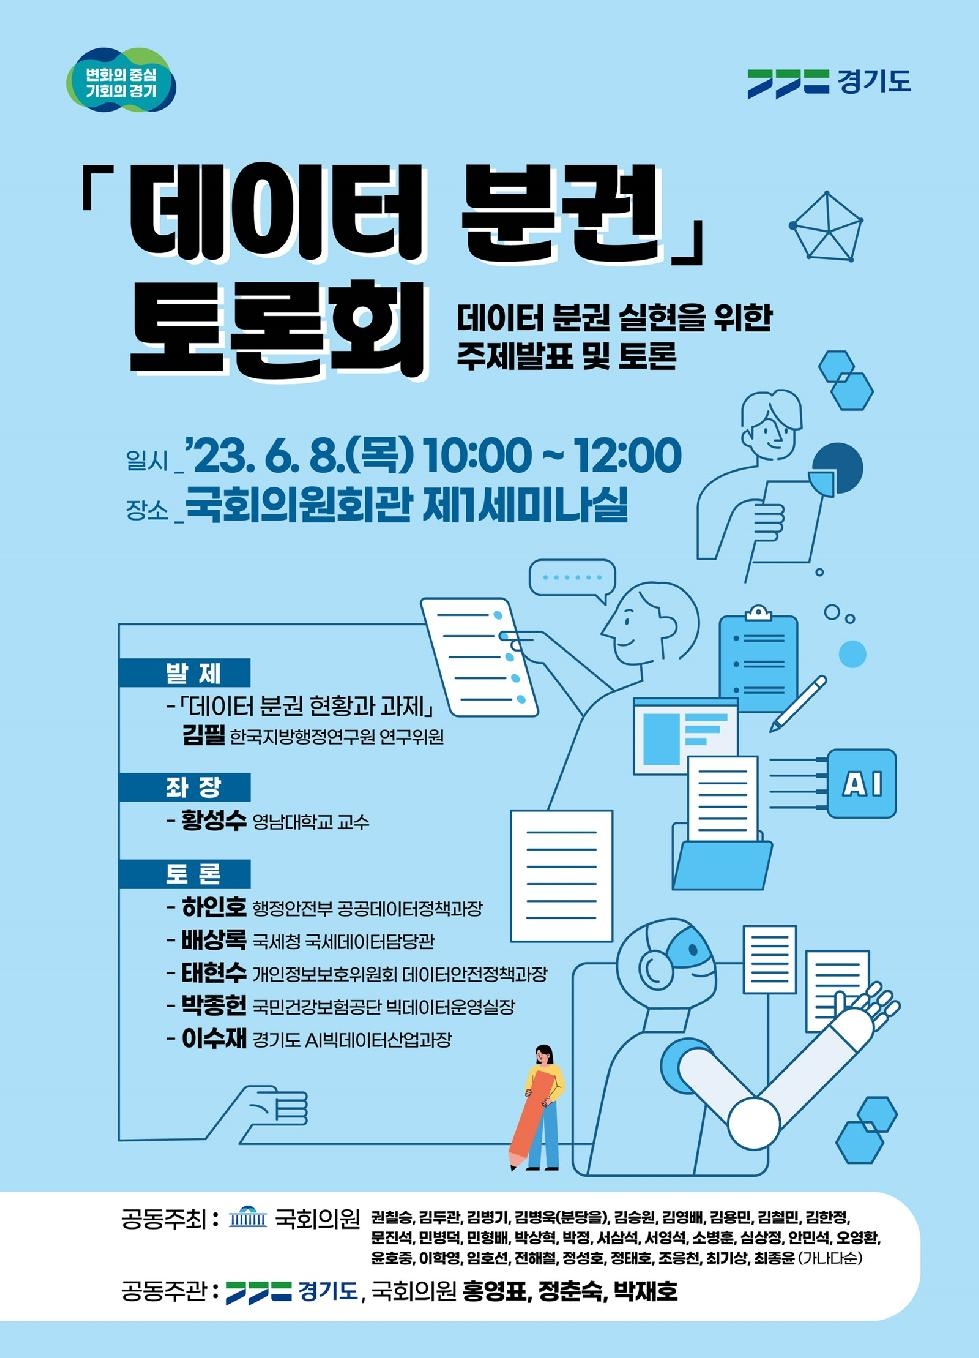 경기도,자치분권 완성을 위한 데이터 분권 논의  6월 8일 국회서 토론회